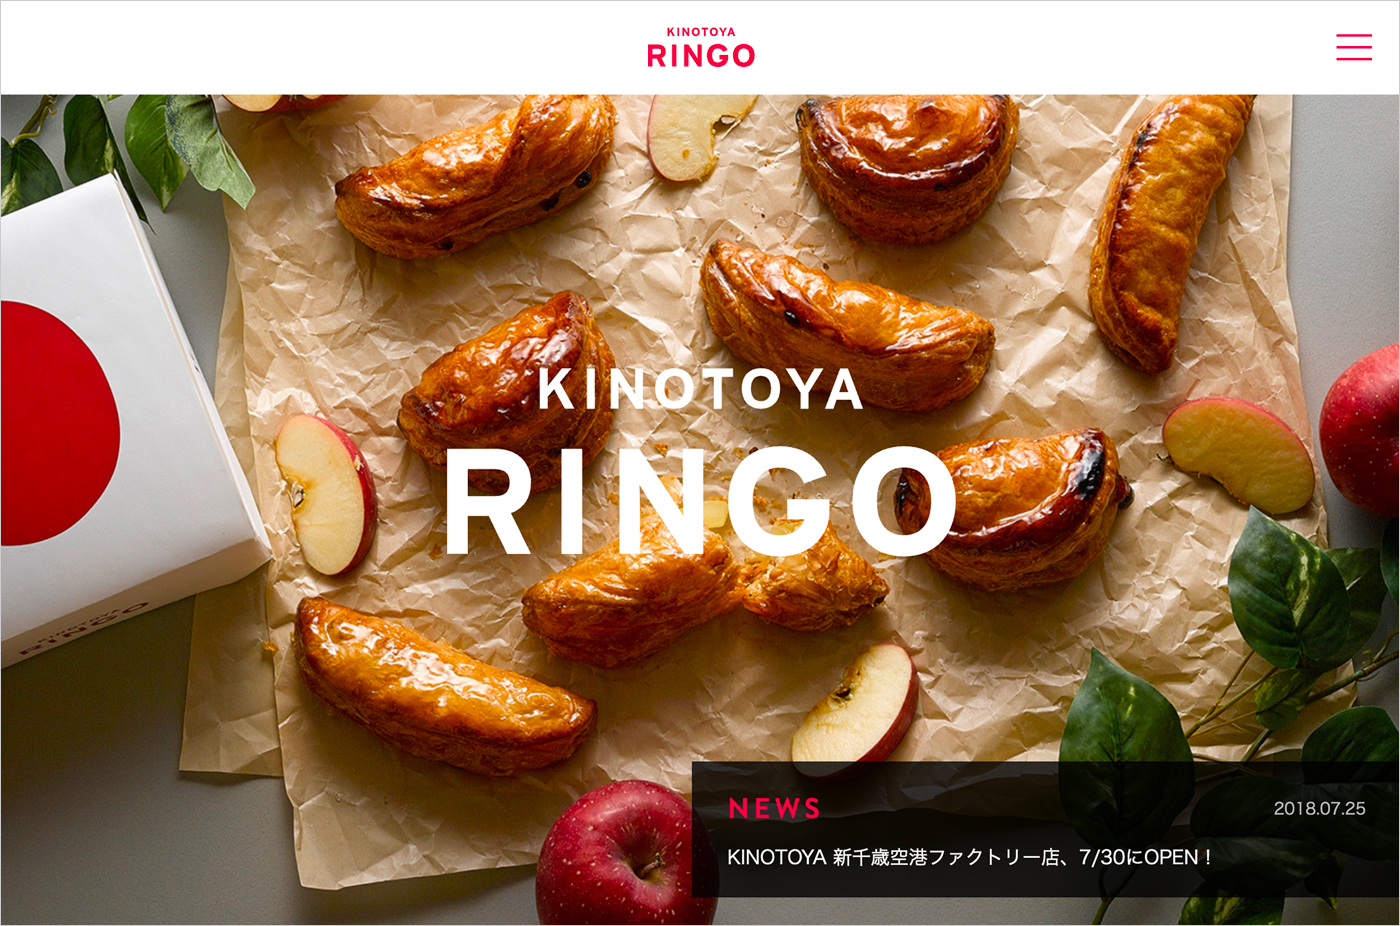 KINOTOYA RINGO 焼きたてアップルパイ専門店ウェブサイトの画面キャプチャ画像